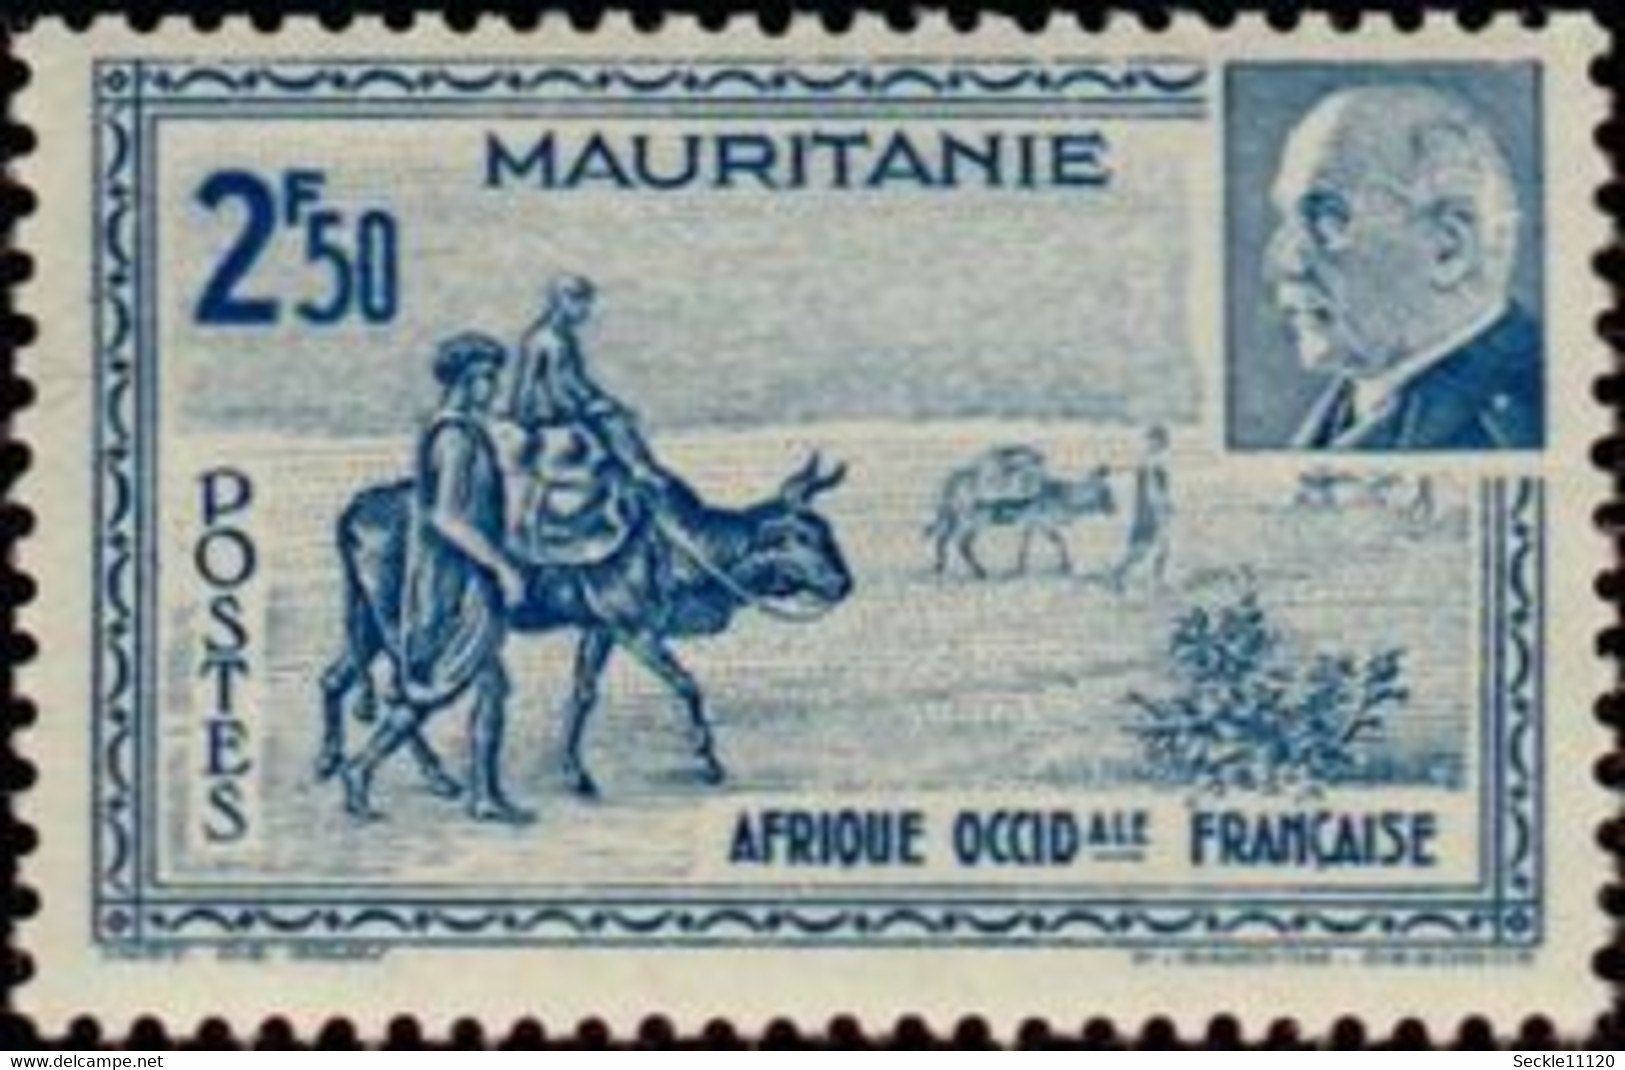 Mauritanie Mauritania - 1941 - Marchands Traversant Le Désert Plus Portrait De Pétain - 2F50 - Mauritania (1960-...)